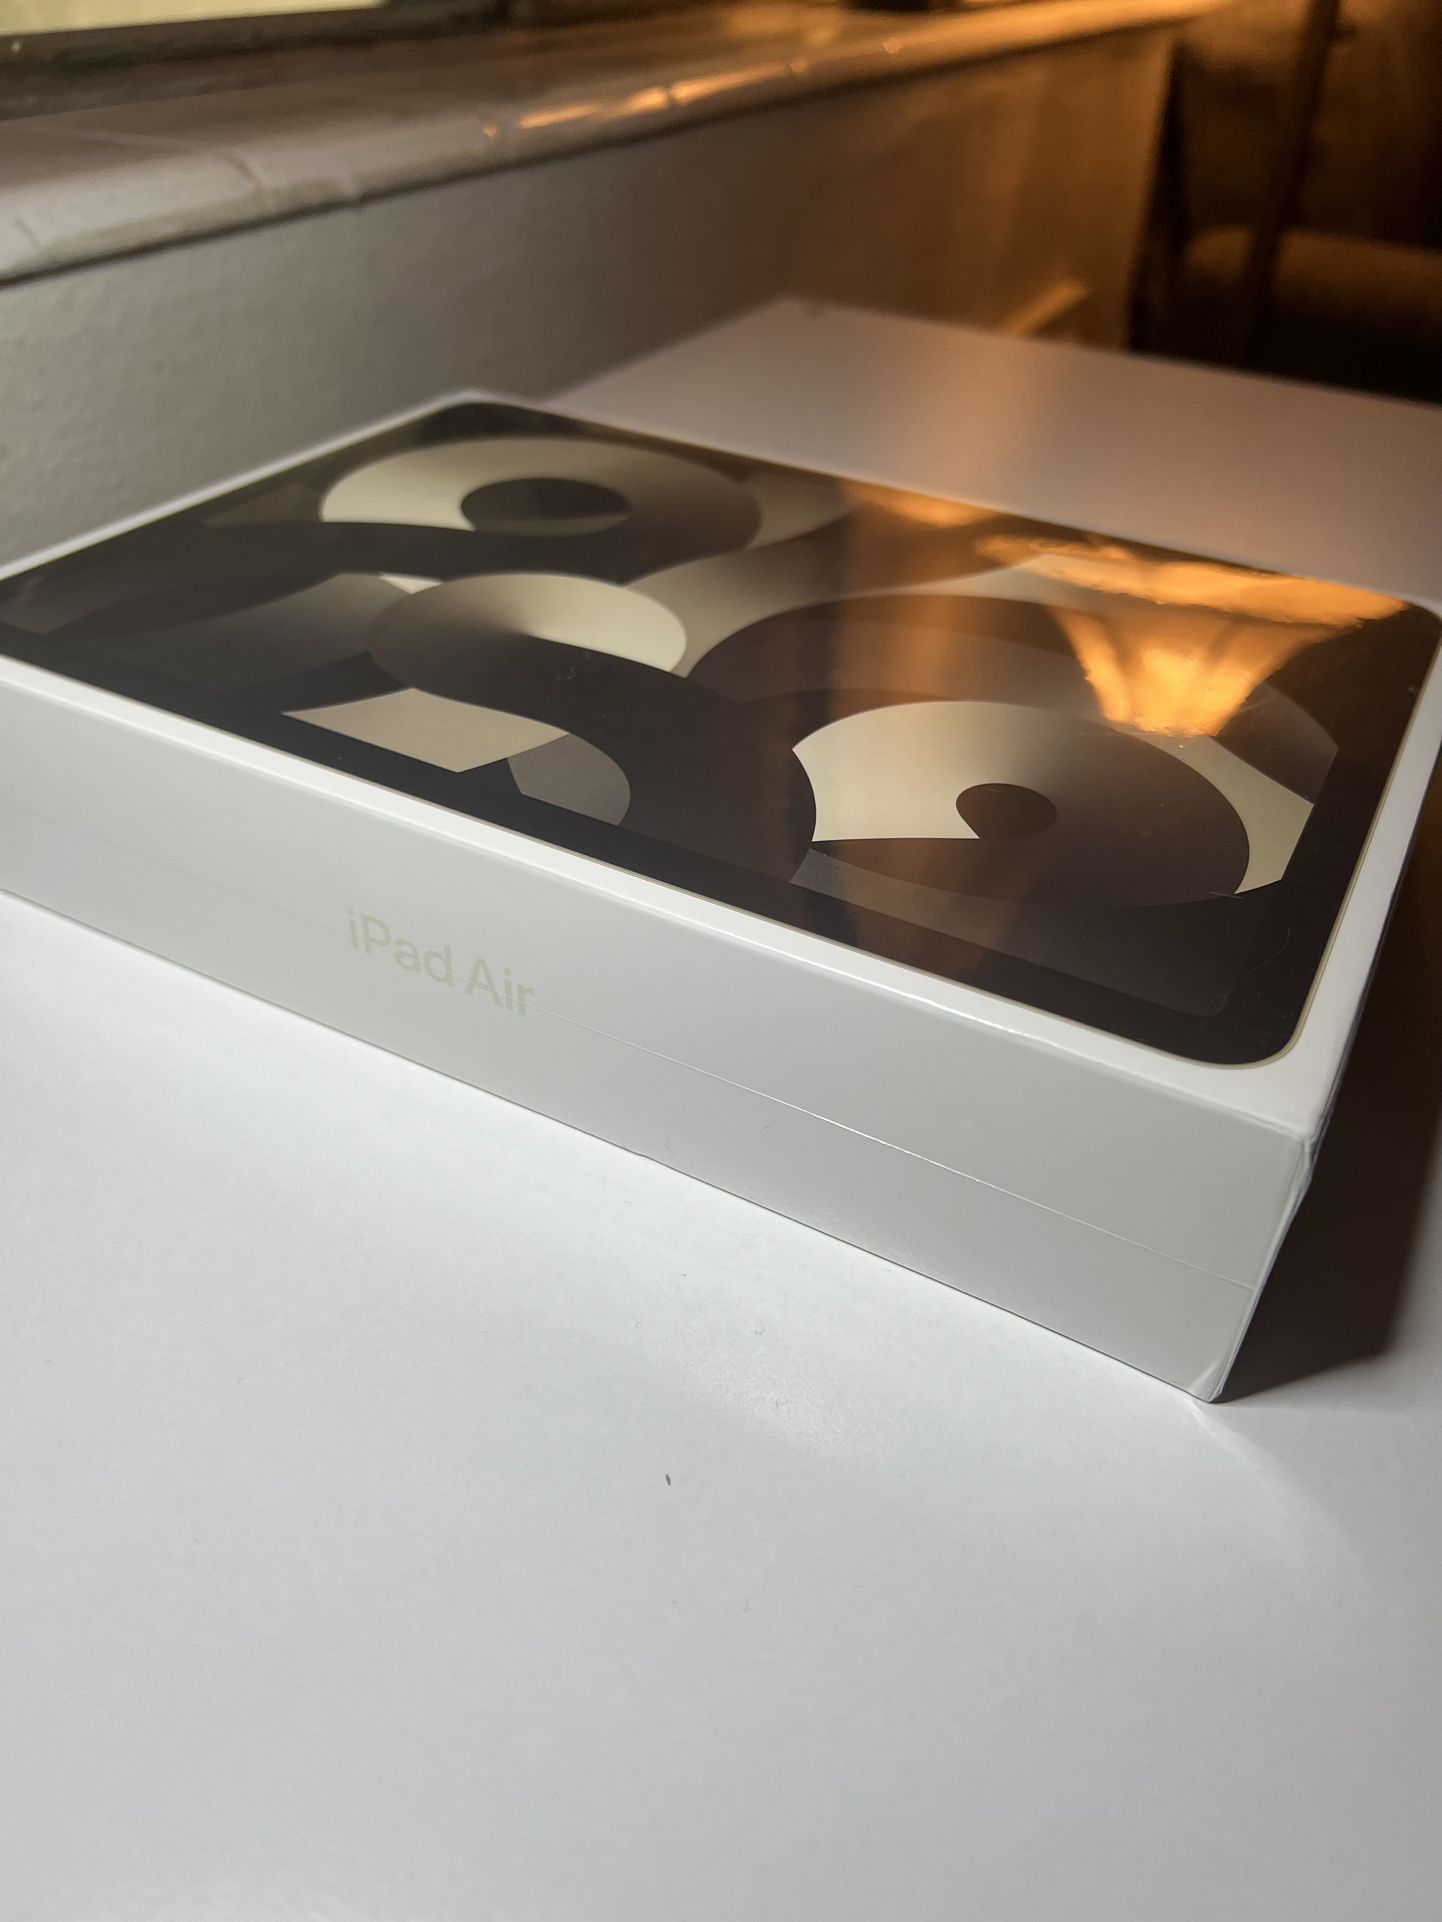 iPad Air ( 5th Gen ) Wi-Fi Starlight NEW Sealed In Box !